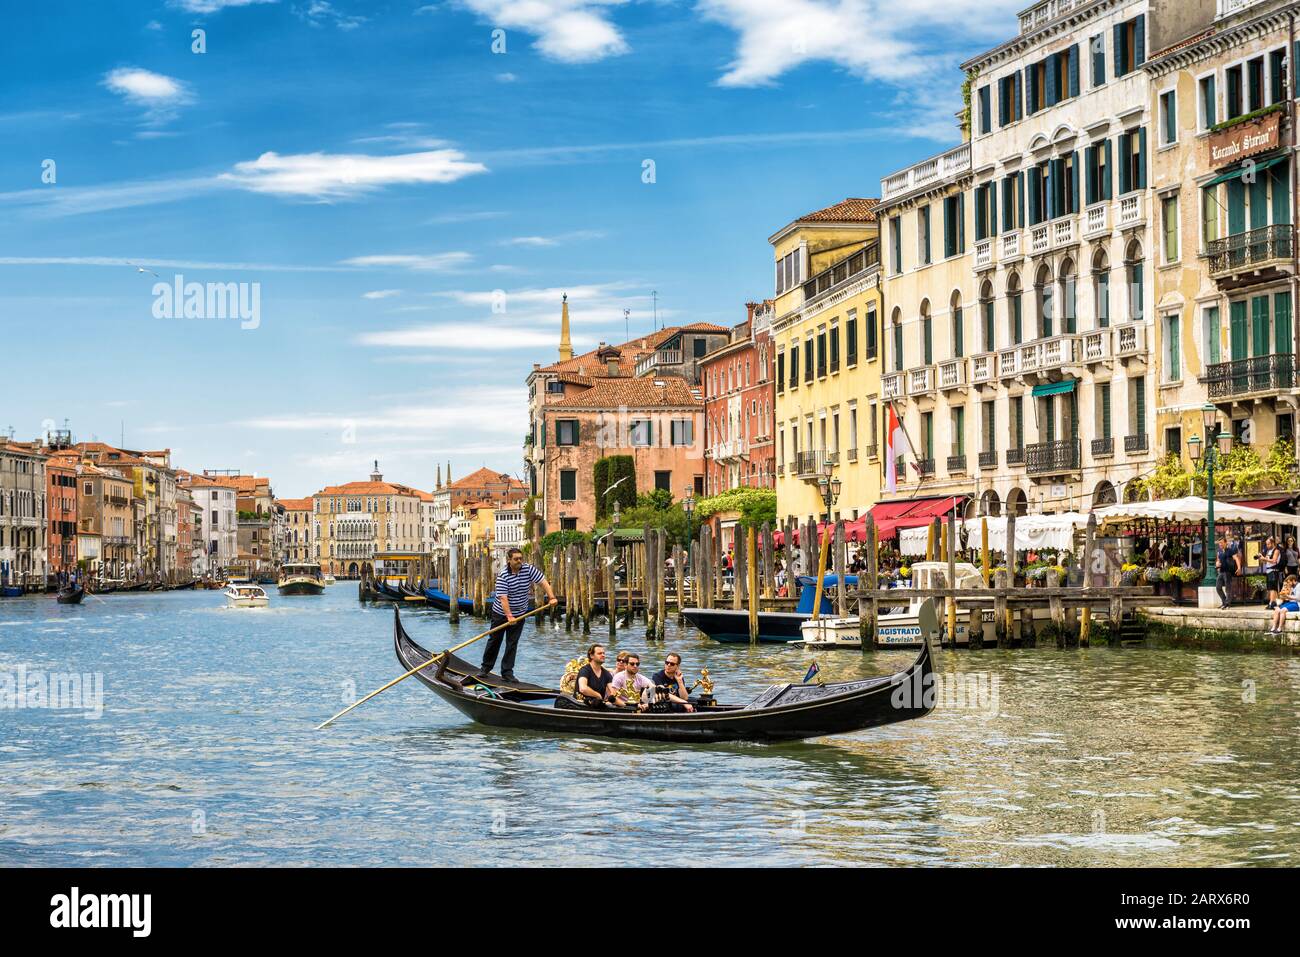 Venedig, Italien - 21. Mai 2017: Gondel mit Touristen fährt am sonnigen Tag entlang des Canal Grande. Die Gondel ist der attraktivste Touristentranspo Stockfoto